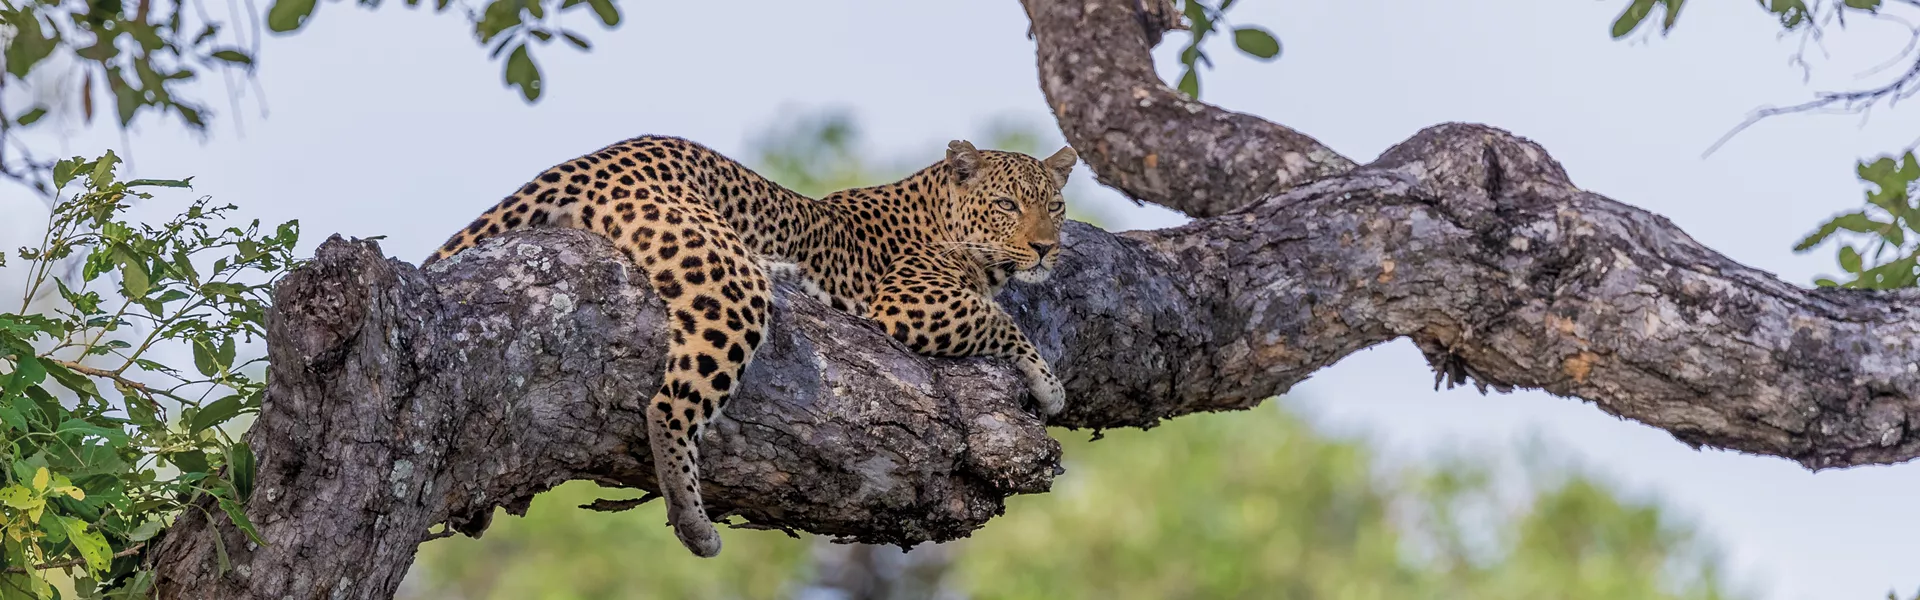 Leopard lying on a tree branch